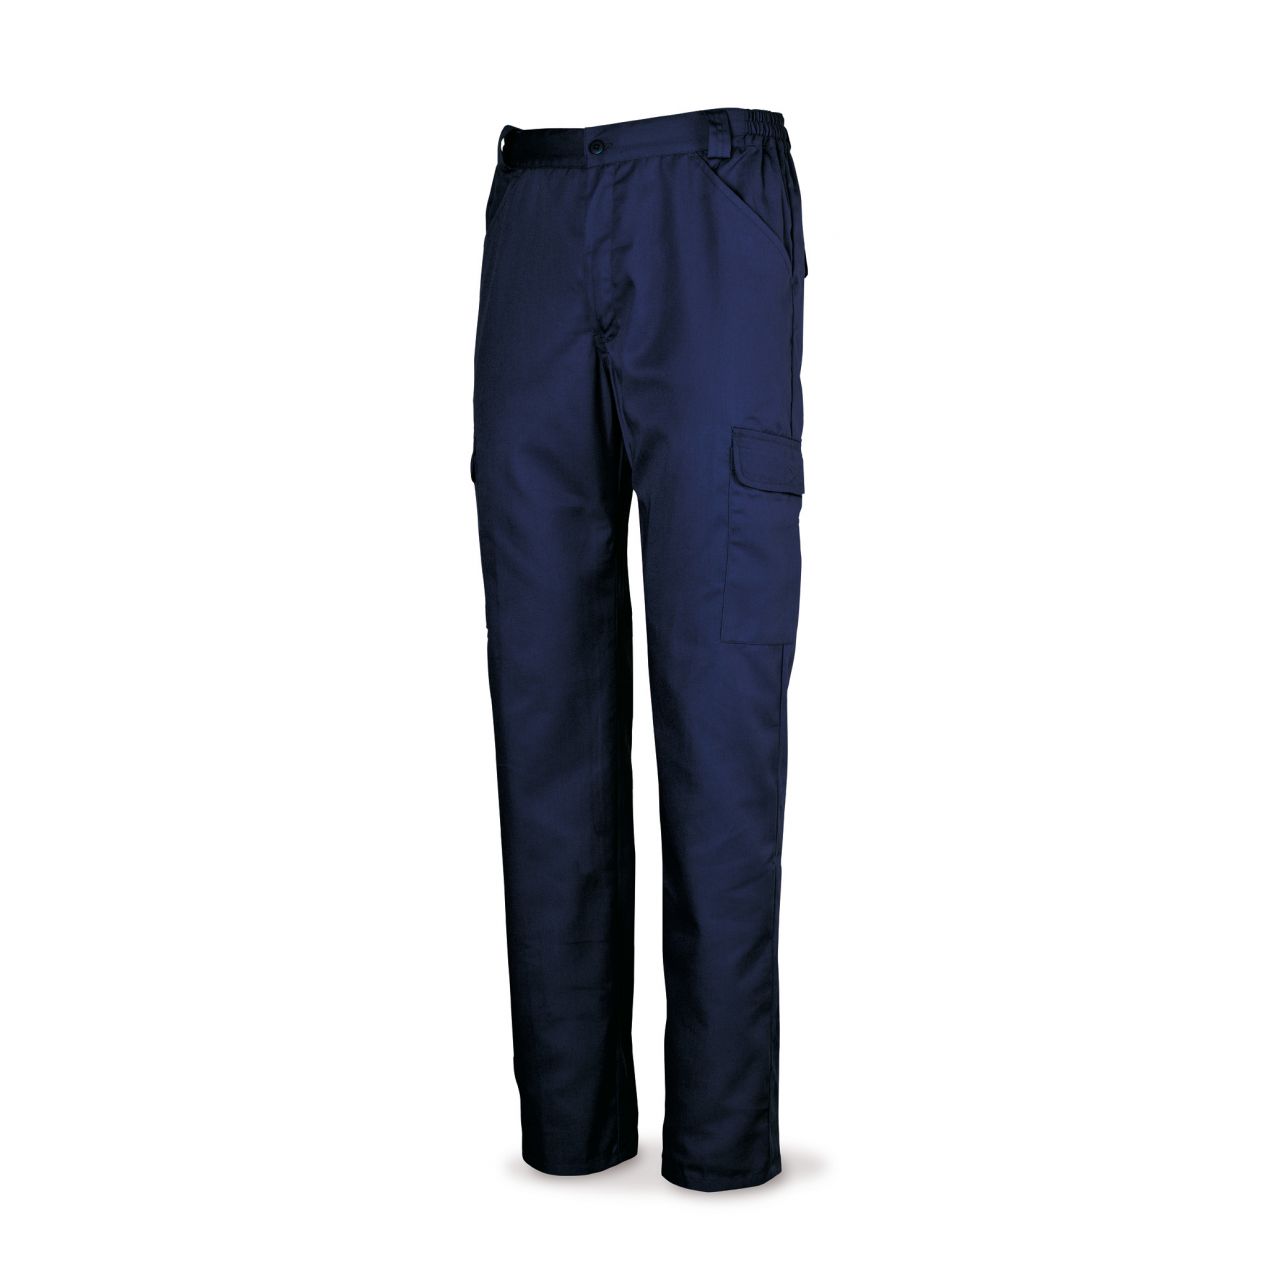 Pantalón azul marino algodón 200 g. Multibolsillos. 46